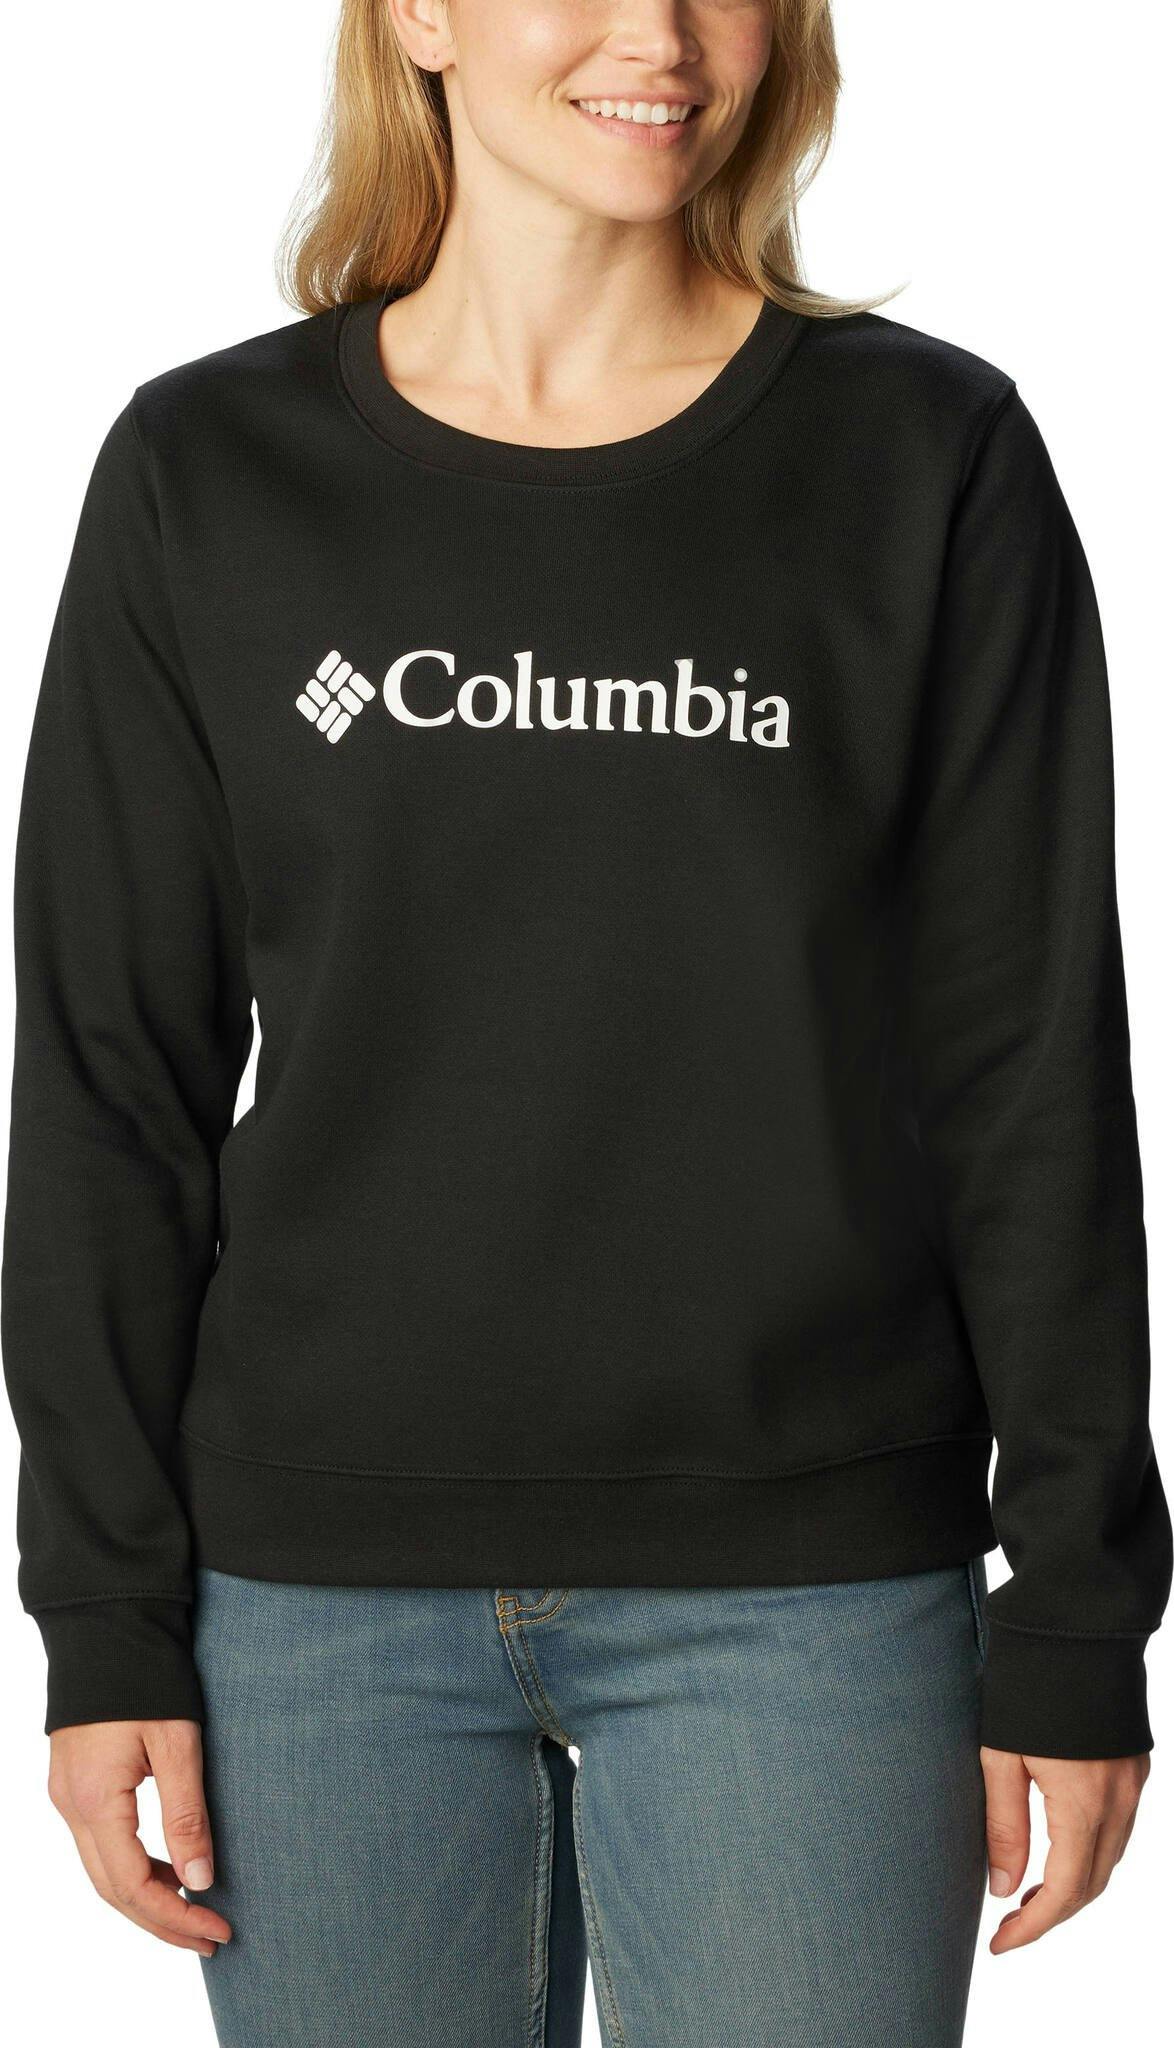 Product image for Columbia Trek Crew Neck Sweatshirt - Women's